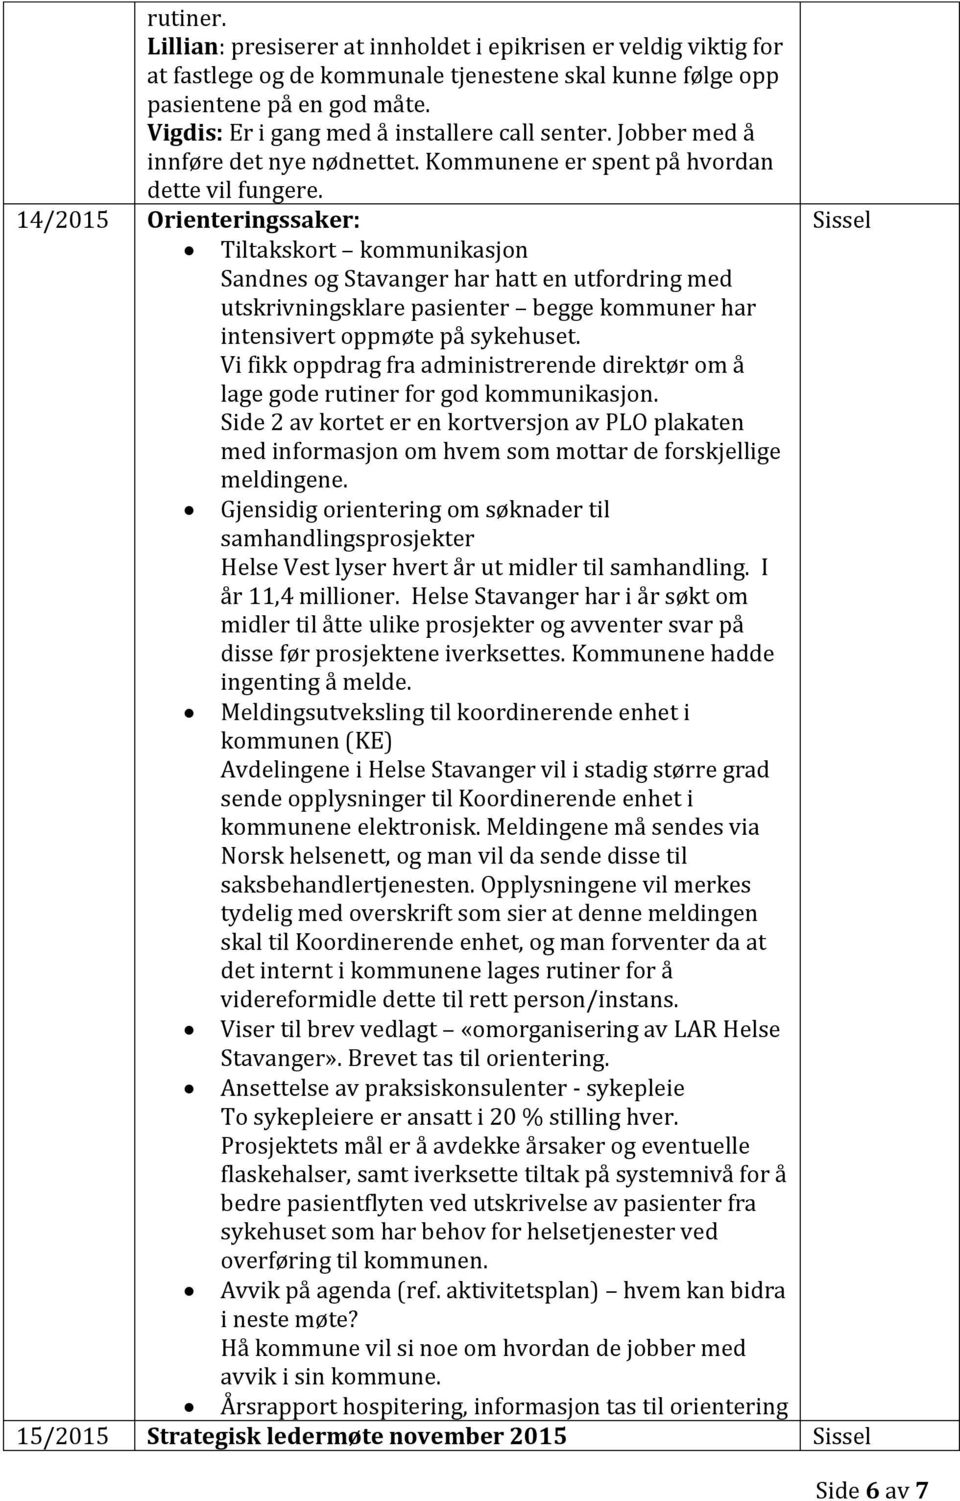 14/2015 Orienteringssaker: Tiltakskort kommunikasjon Sandnes og Stavanger har hatt en utfordring med utskrivningsklare pasienter begge kommuner har intensivert oppmøte på sykehuset.